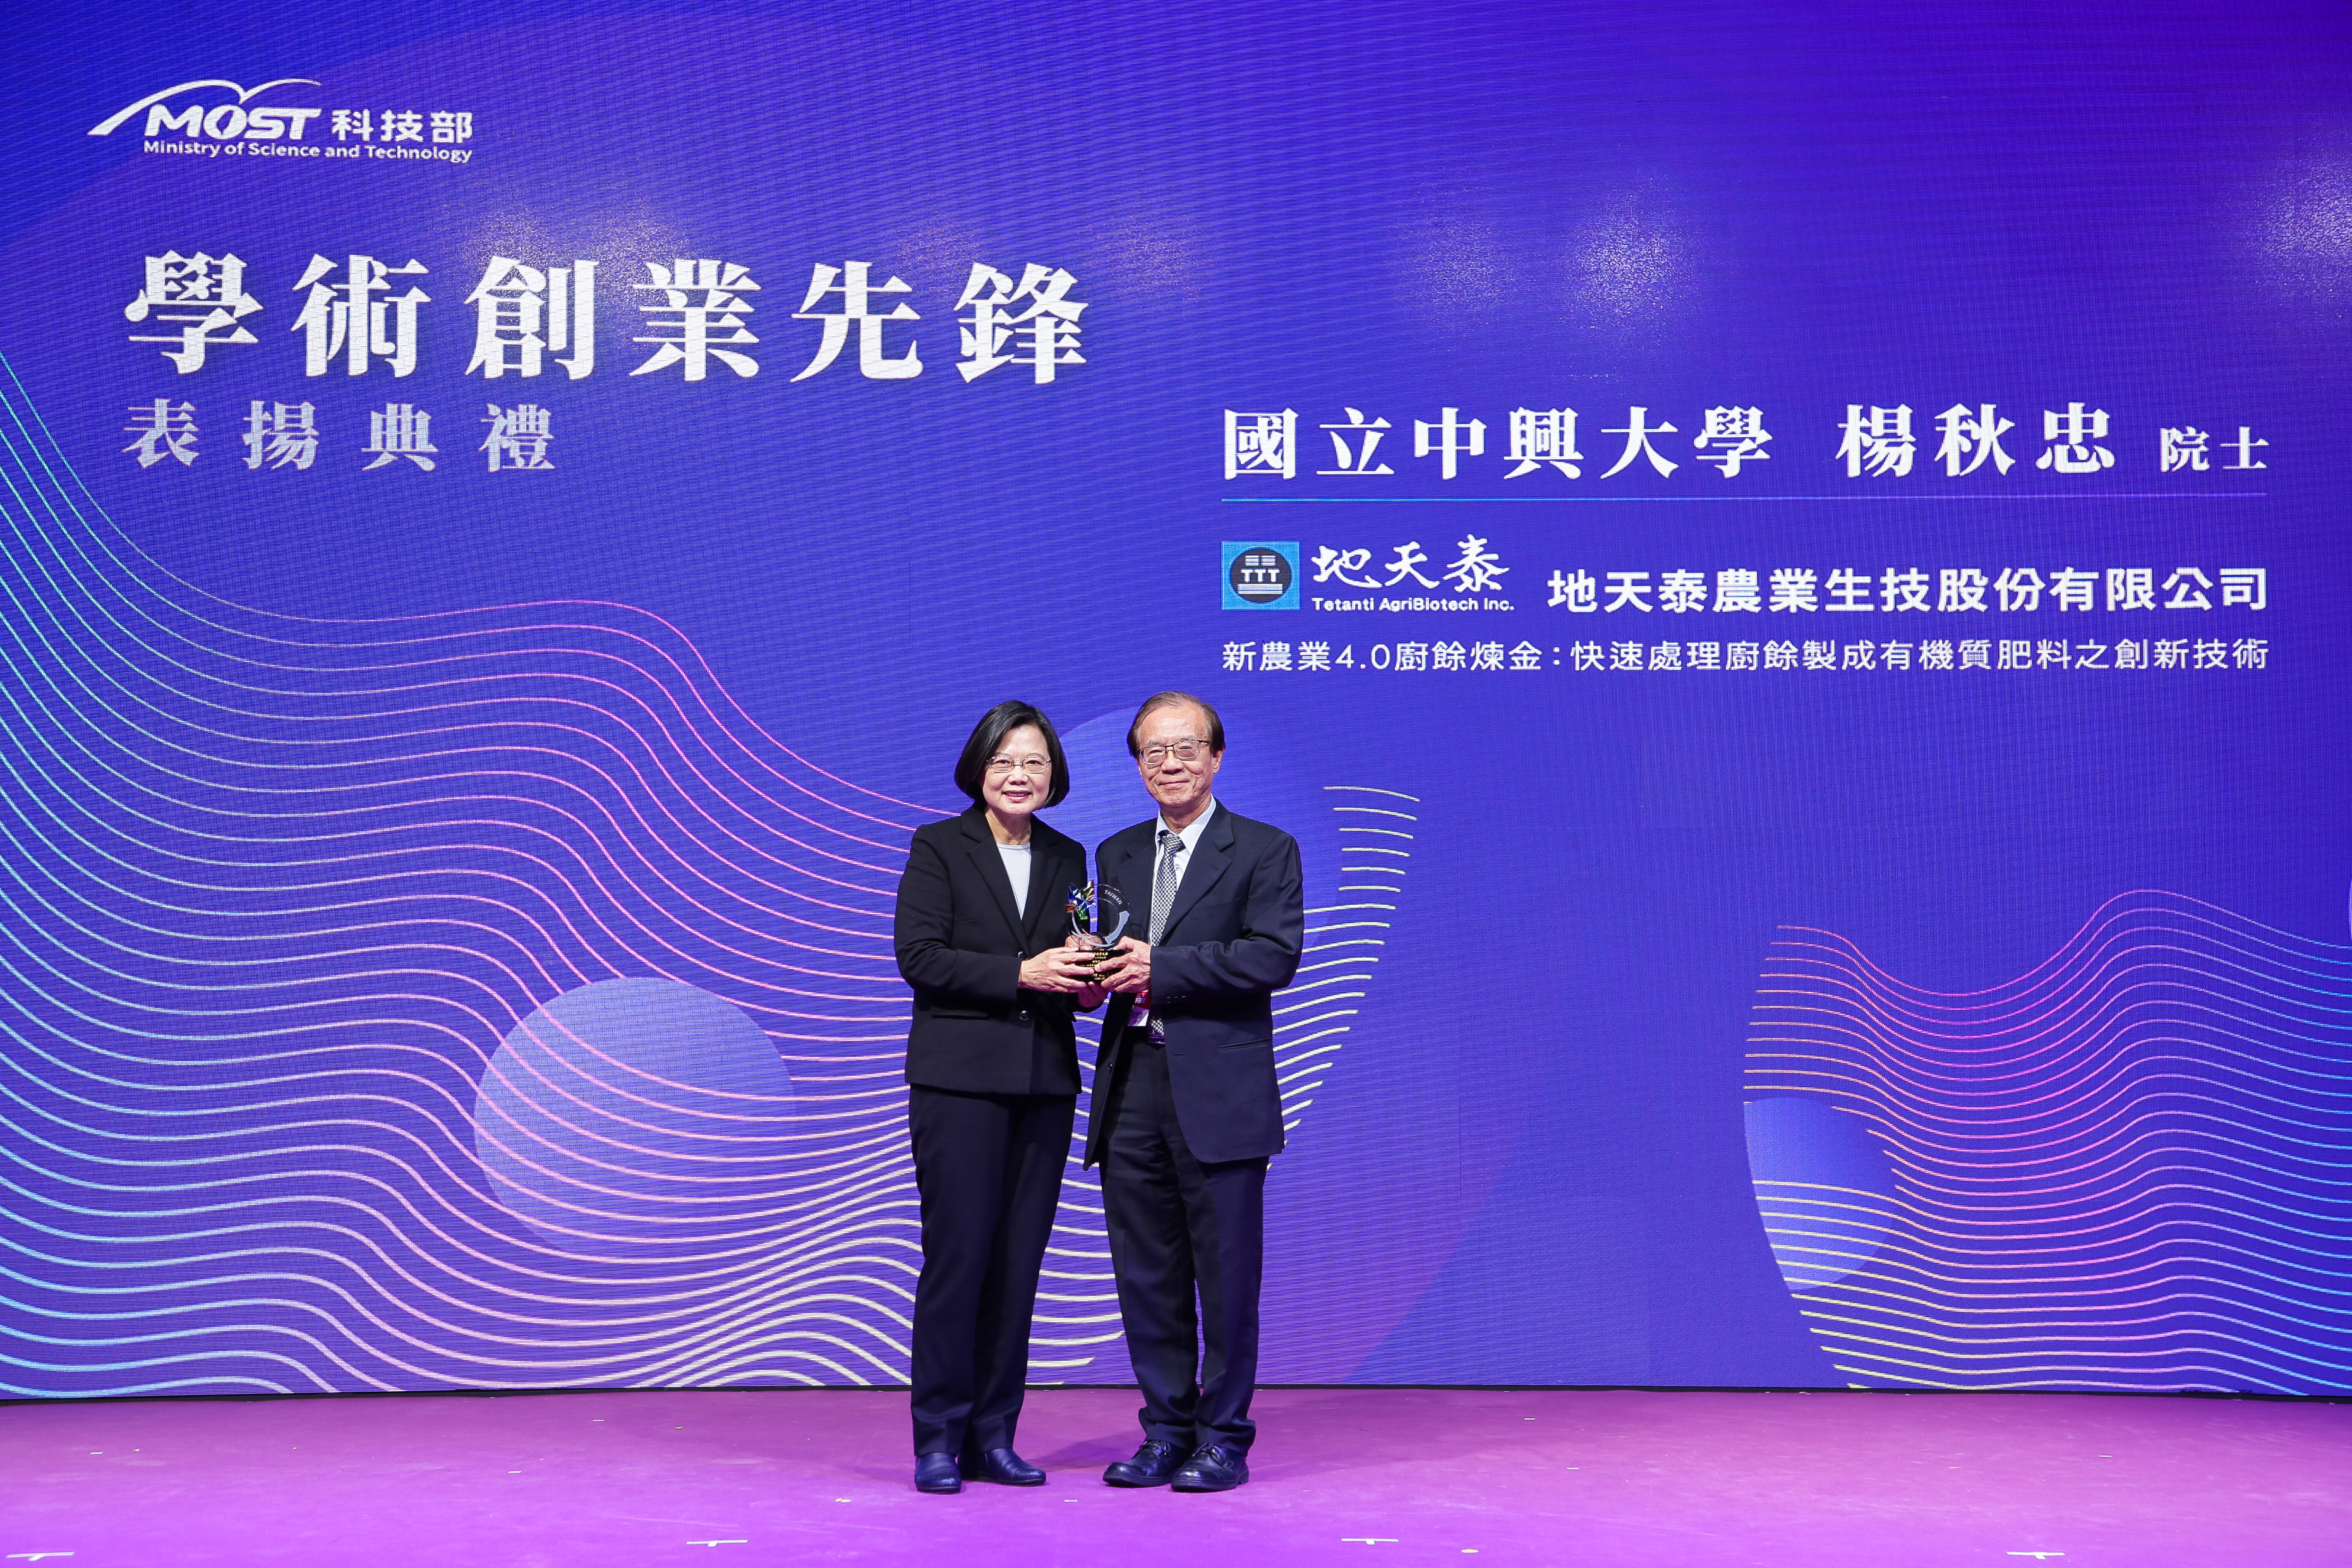 蔡總統頒獎肯定台灣科研實力與創新活力 (科技部)